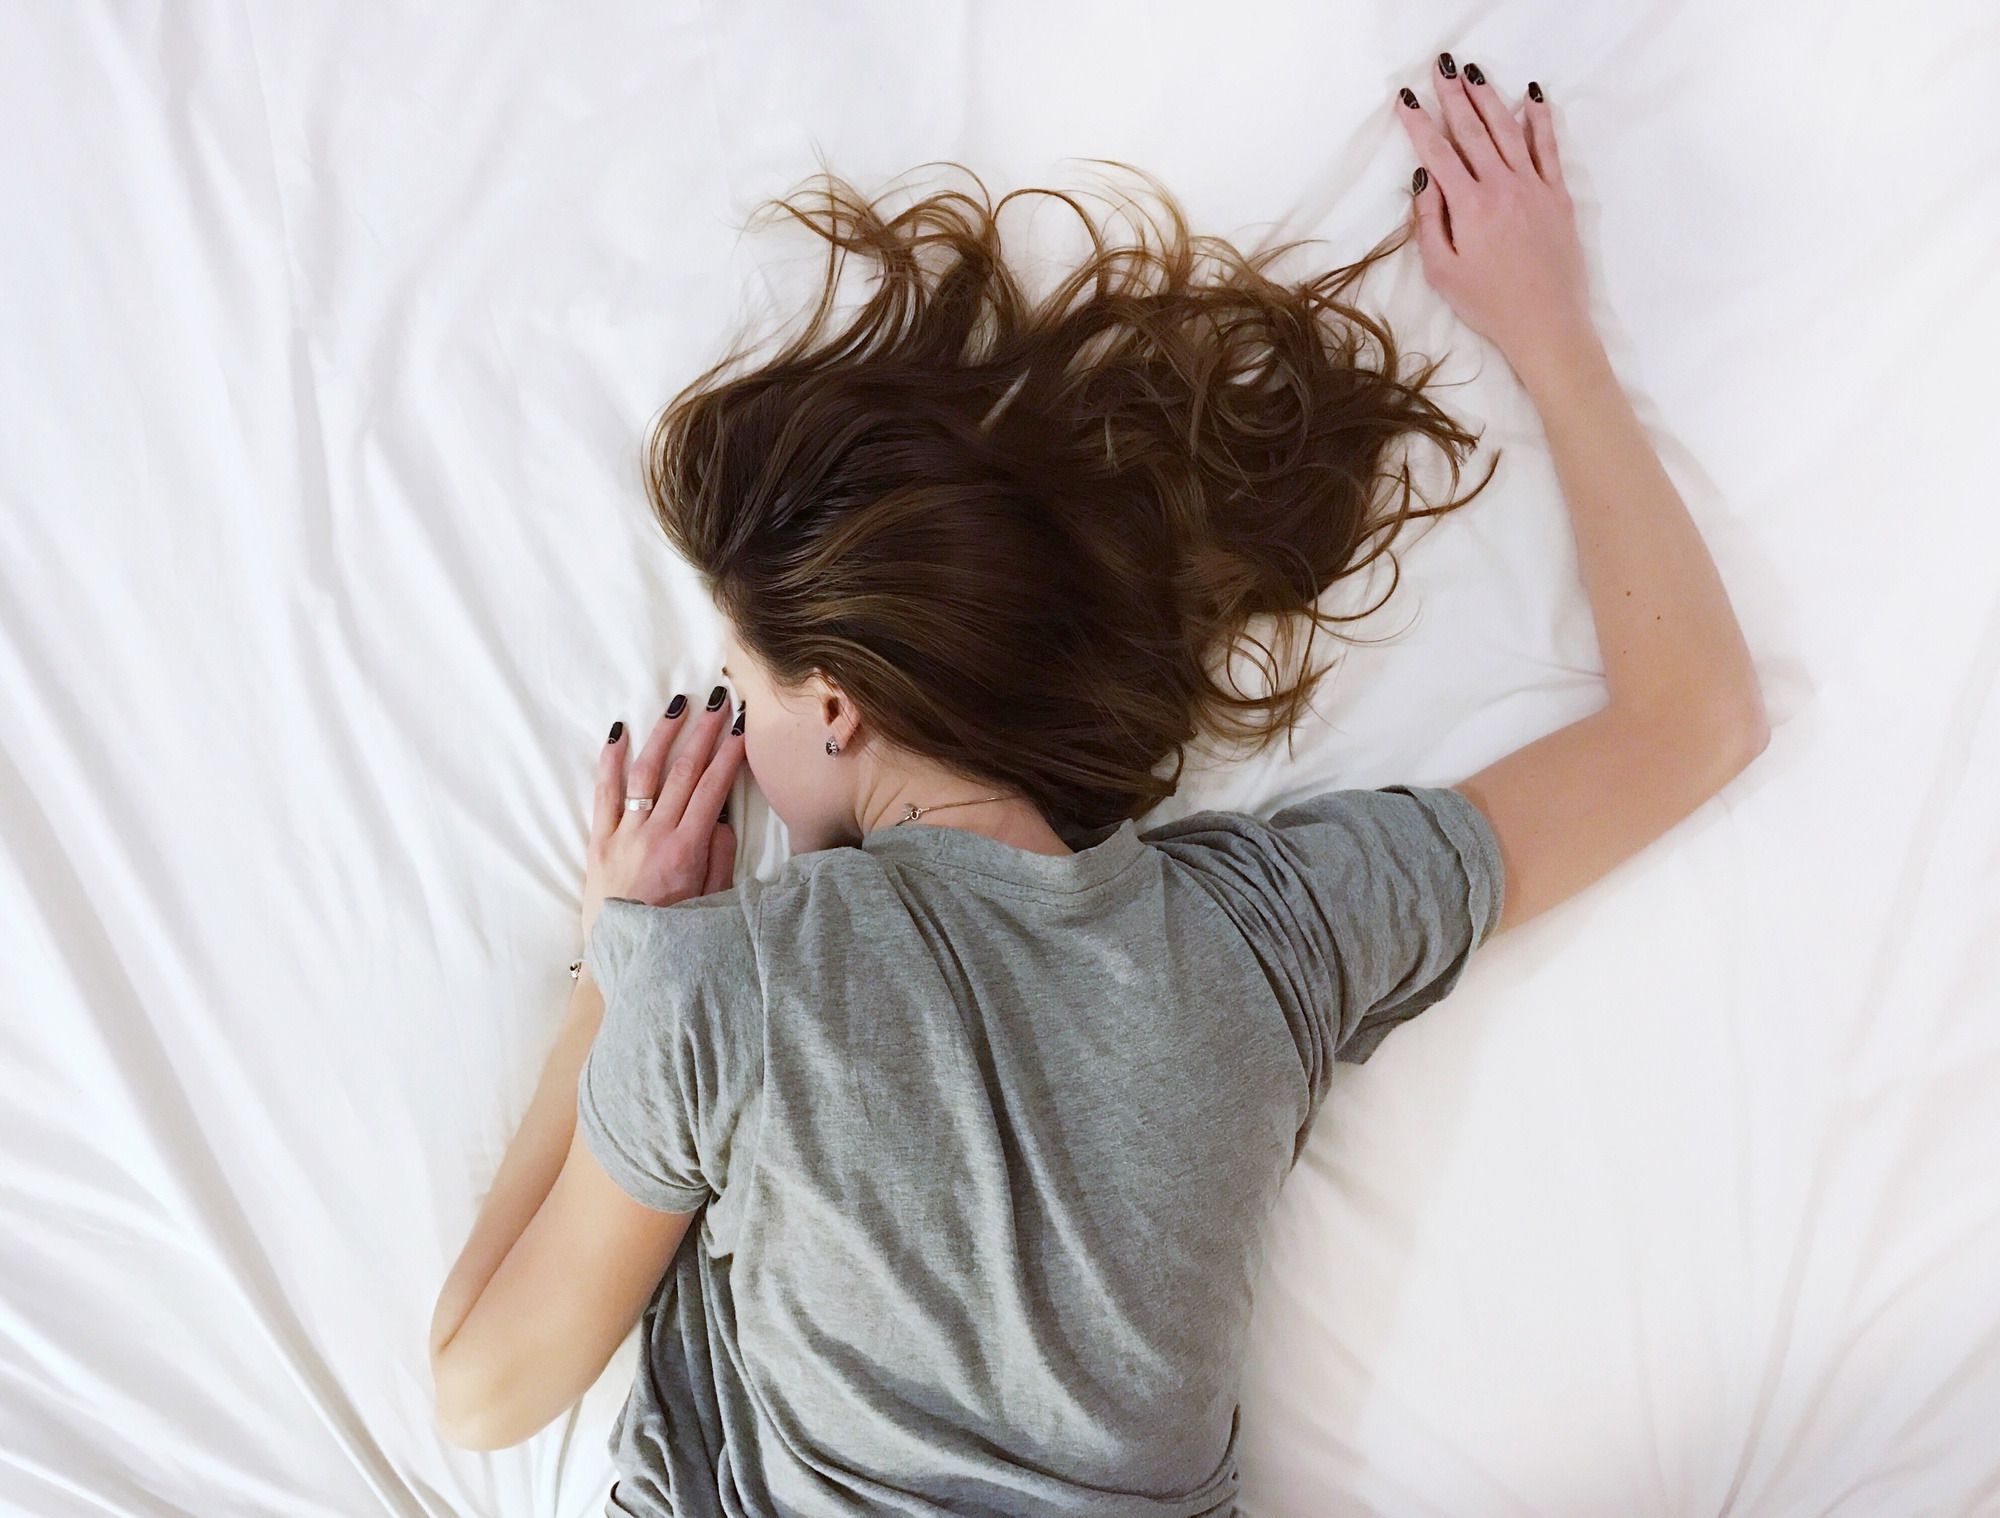 Медики розповіли, що хронічний недосип так само шкідливий, як і занадто тривалий сон. До такого висновку вчені прийшли під час ряду досліджень.